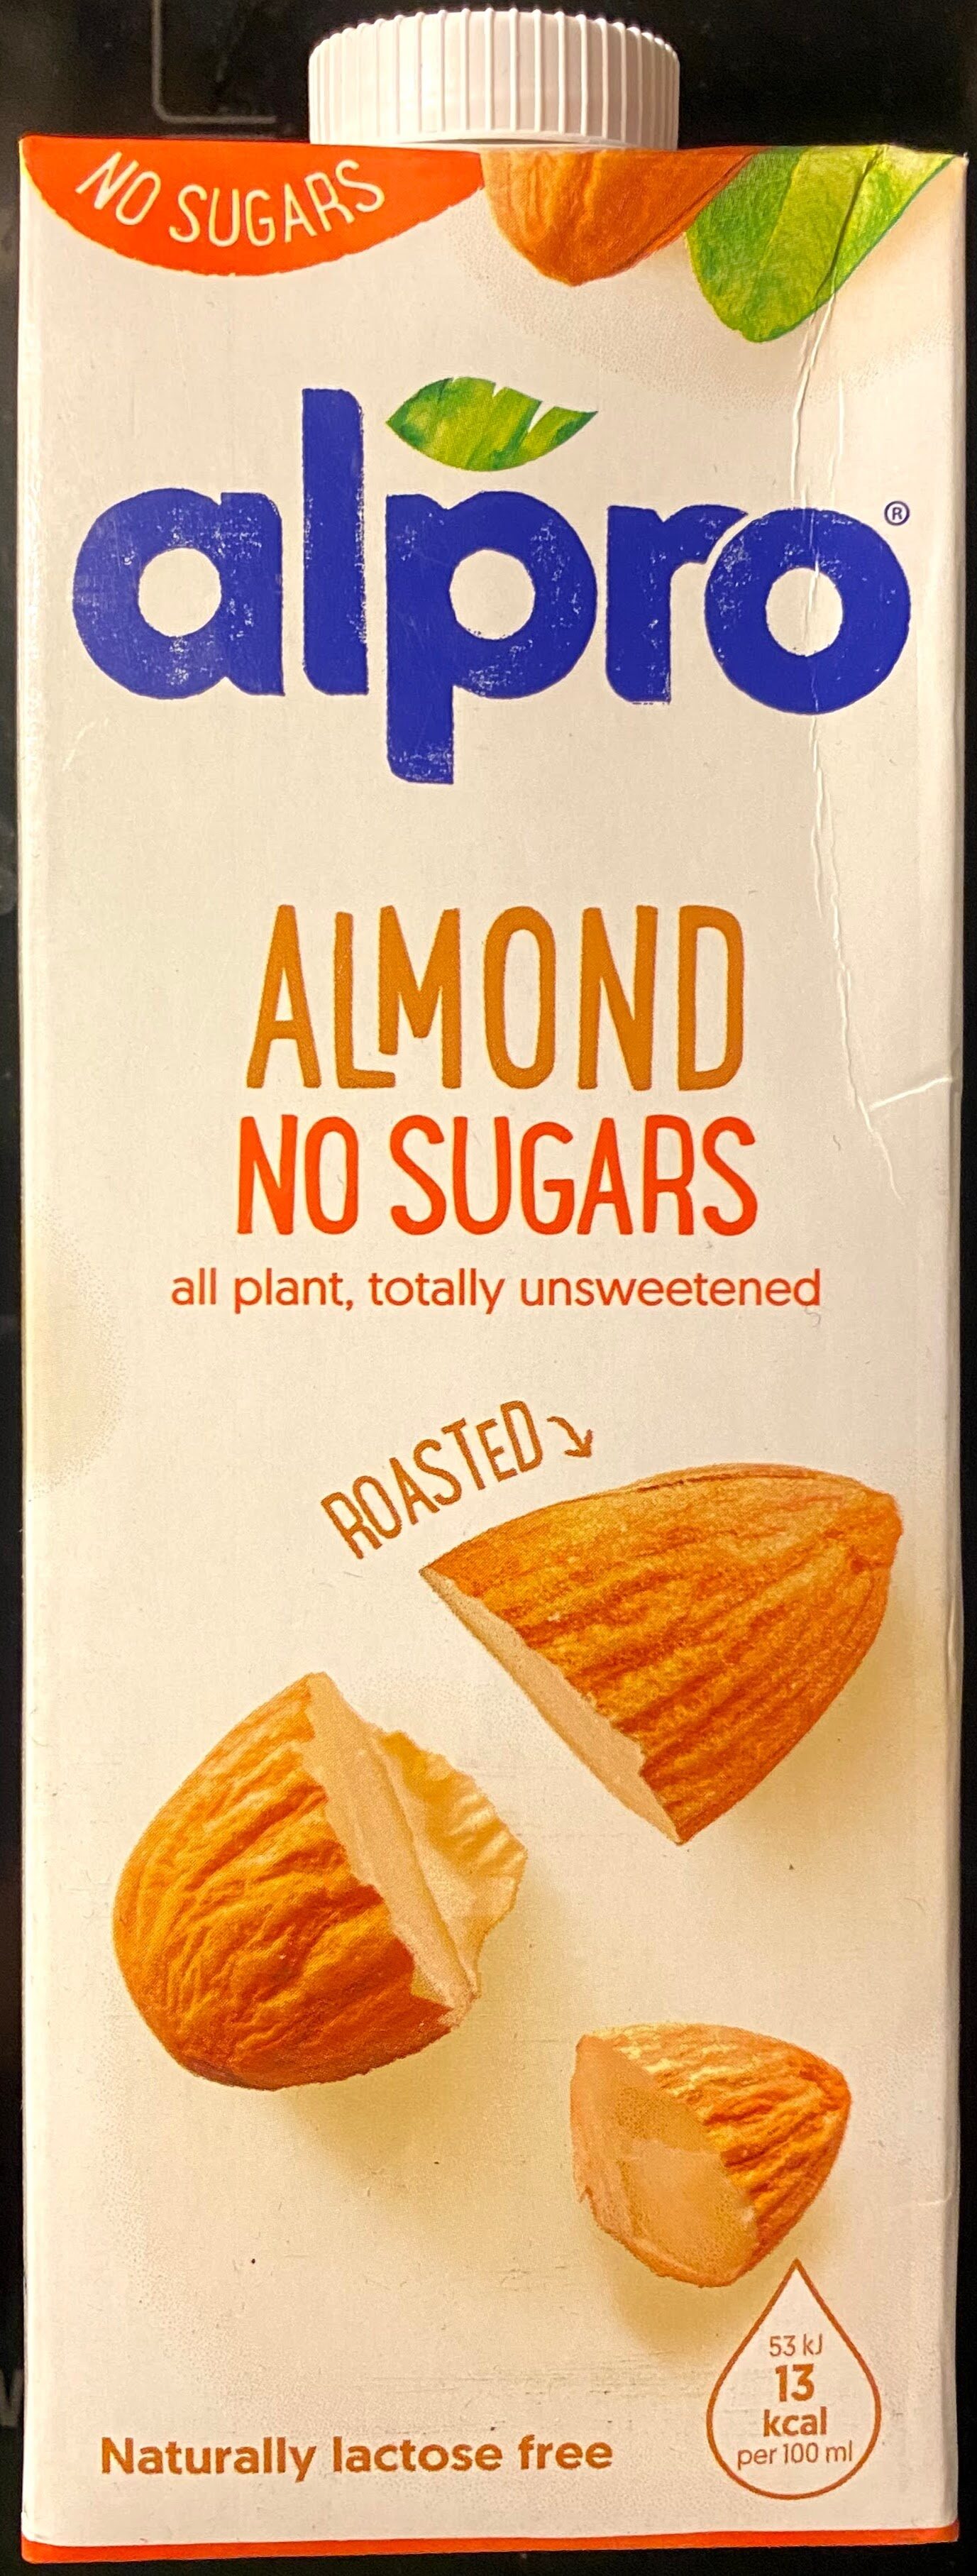 Almond No Sugars - Producto - en